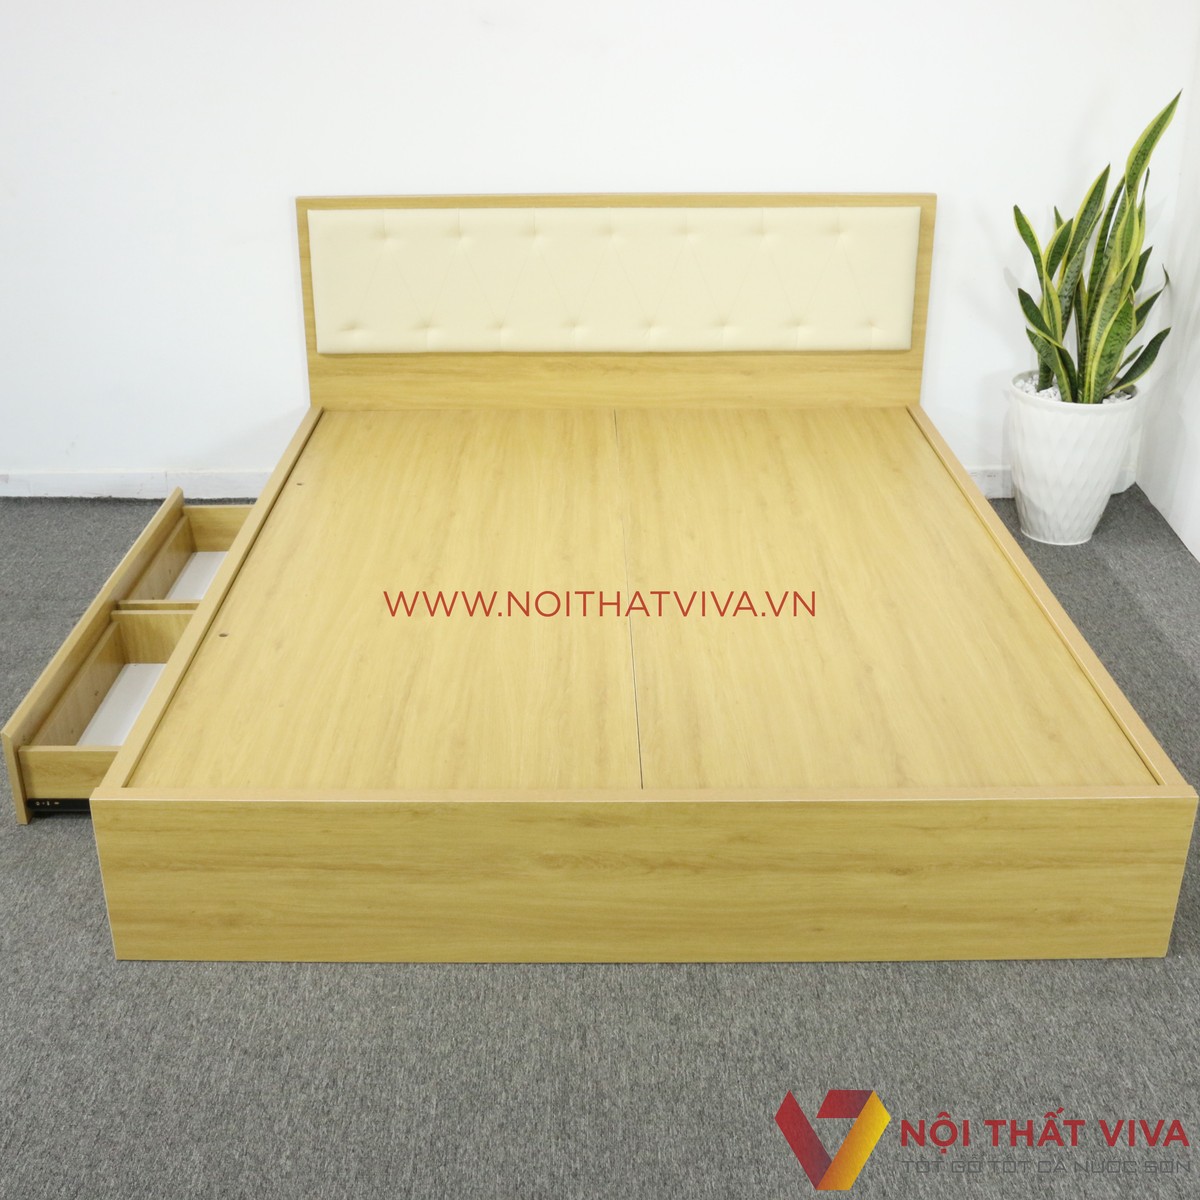 Từ A đến Z về giường ngủ 1m2 gỗ công nghiệp: Cấu tạo, mẫu đẹp, giá bao nhiêu?